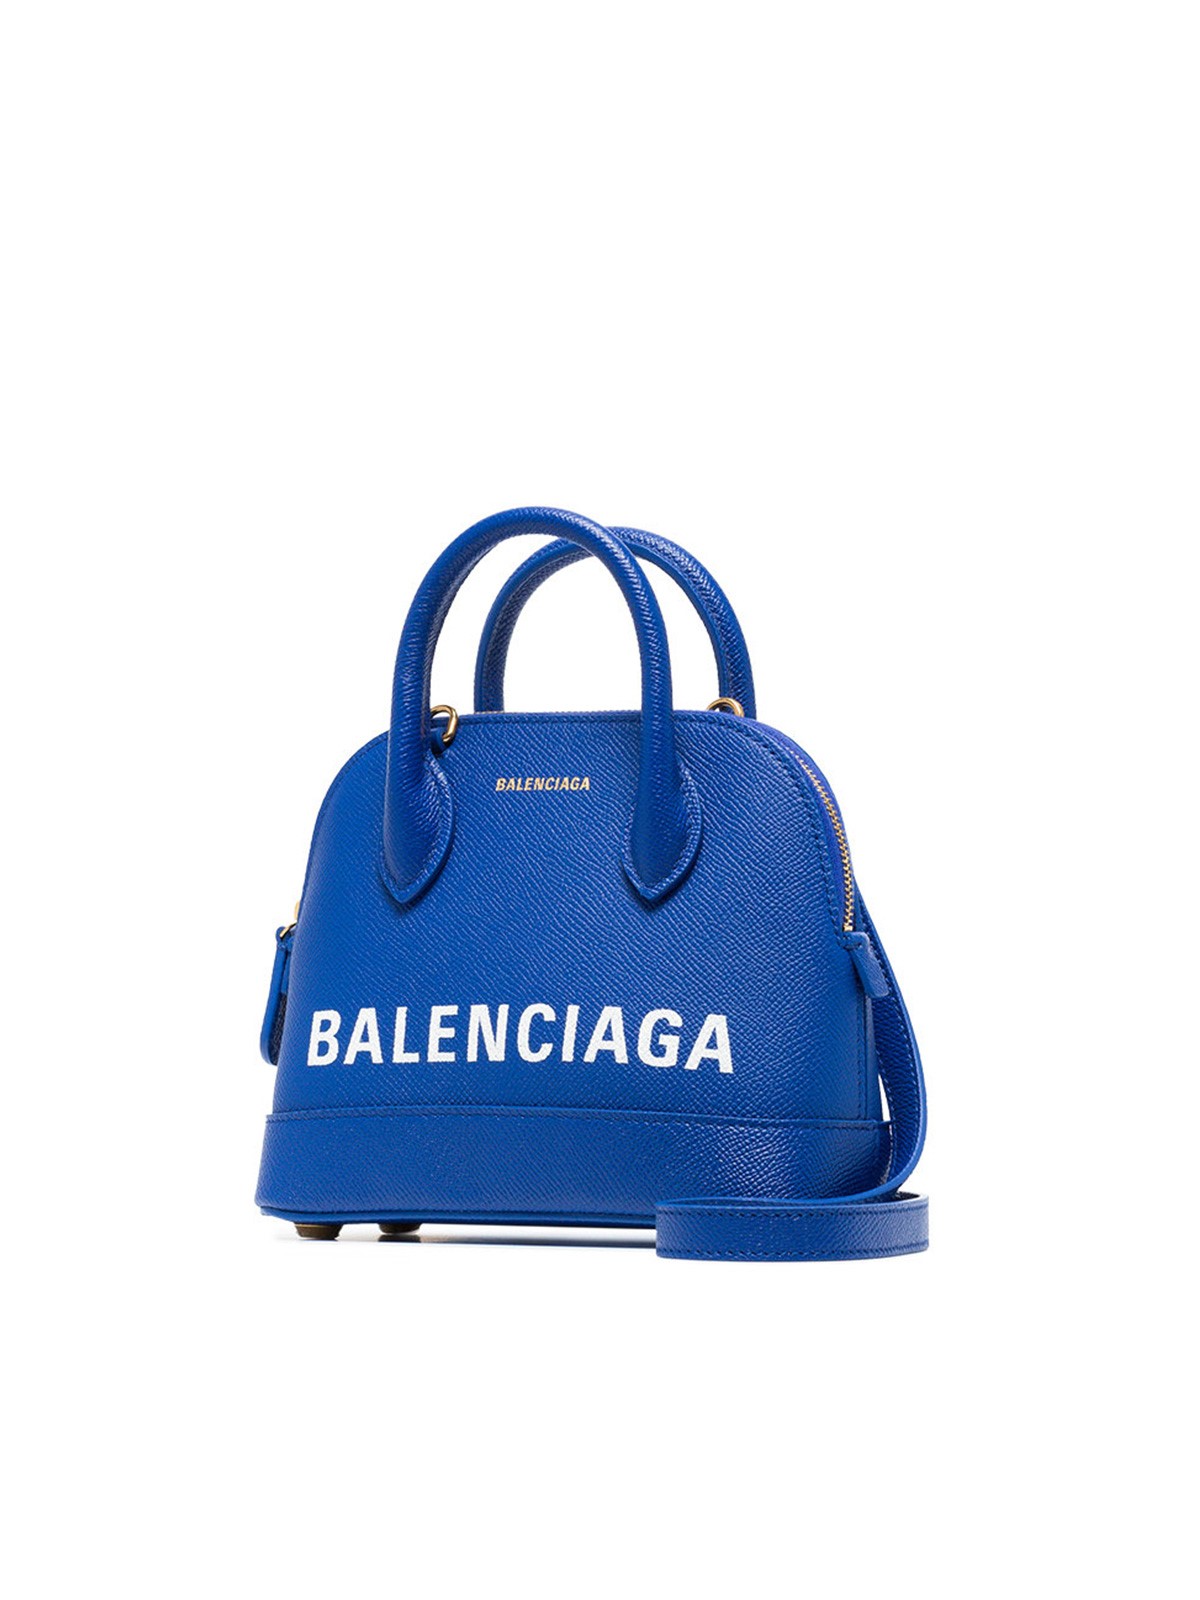 Balenciaga Bags  Handbags for Women  Authenticity Guaranteed  eBay